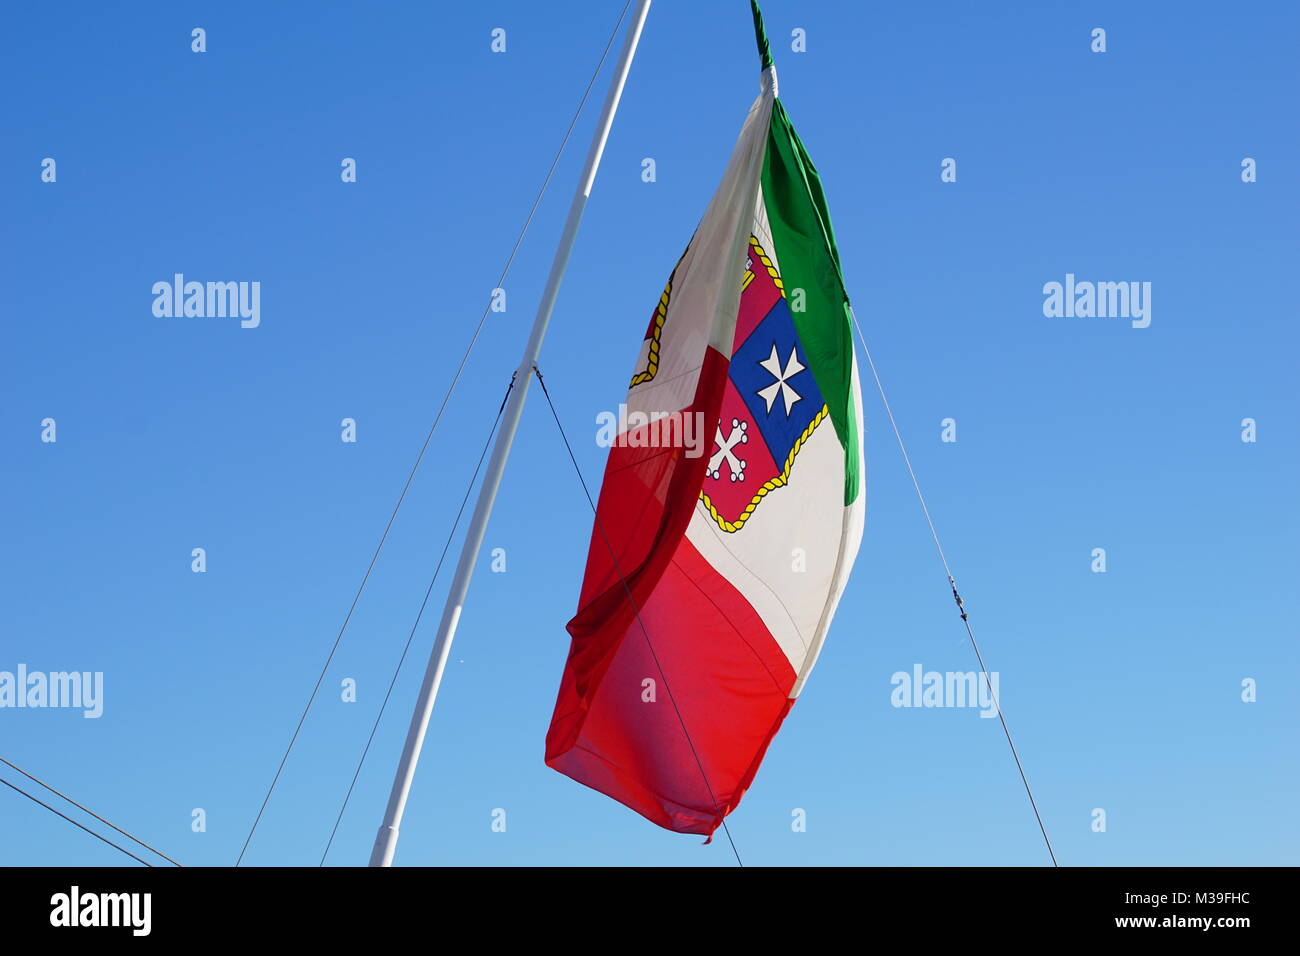 Flagge Italien mit Wappen Fahne Italien mit Wappen